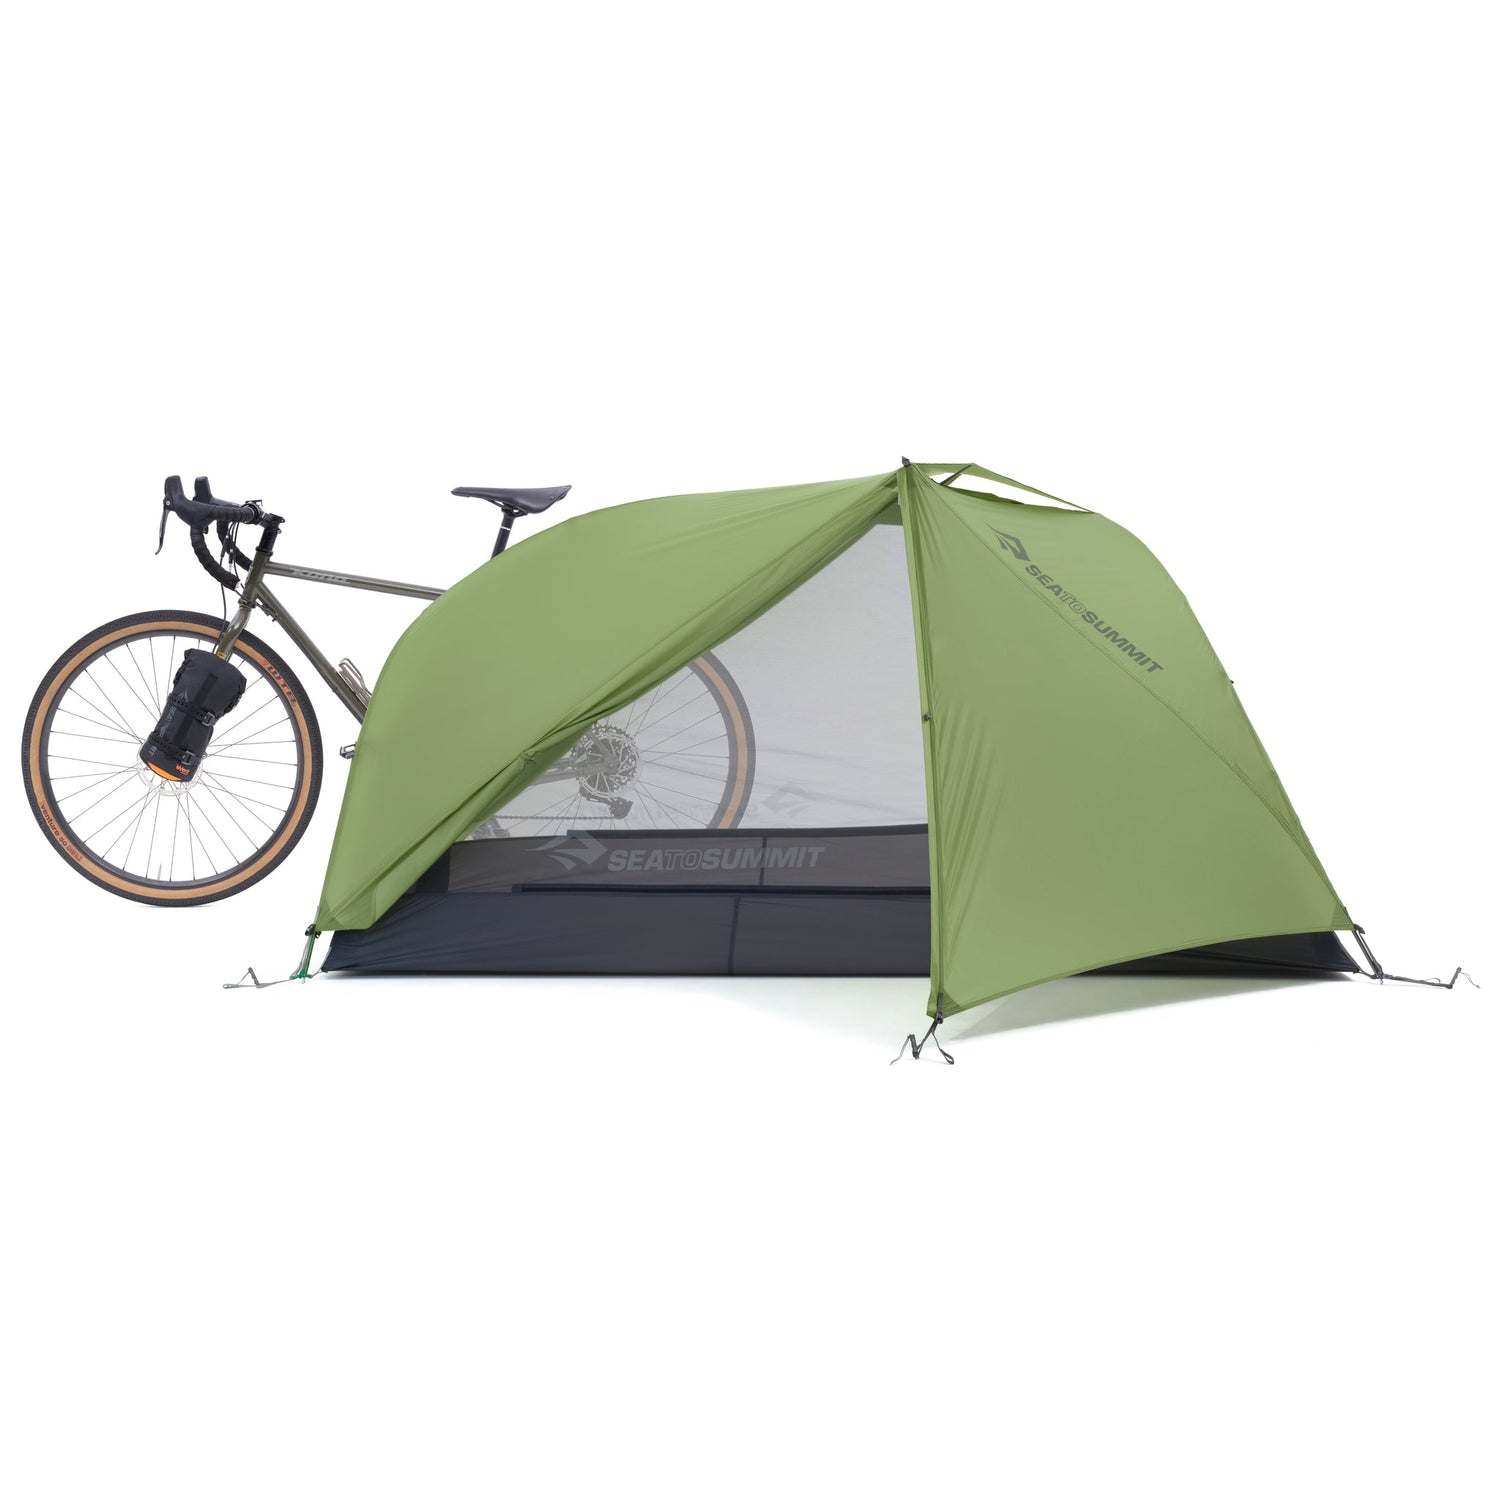 Telos TR2 Bikepack - Freistehendes Bikepacking-Zelt für zwei